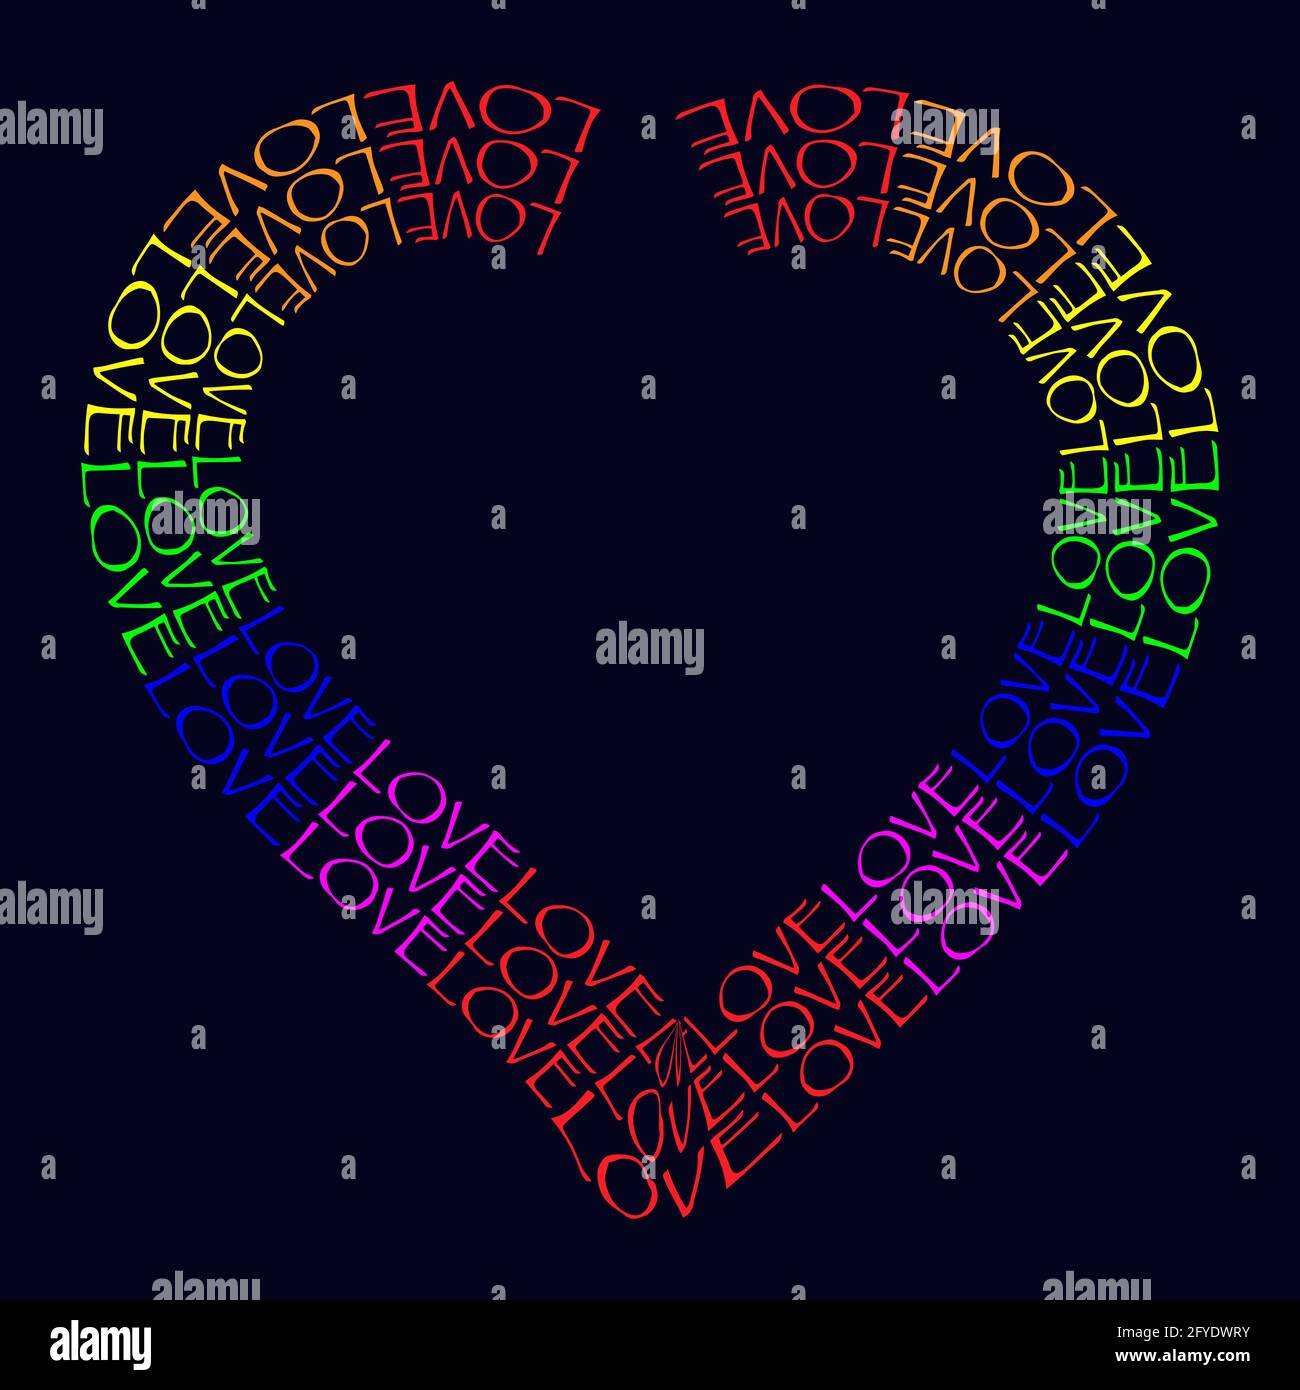 LGBT arc-en-ciel symbole coeur amour. Forme de coeur faite de mots AMOUR Illustration vectorielle isolée sur fond bleu foncé Illustration de Vecteur